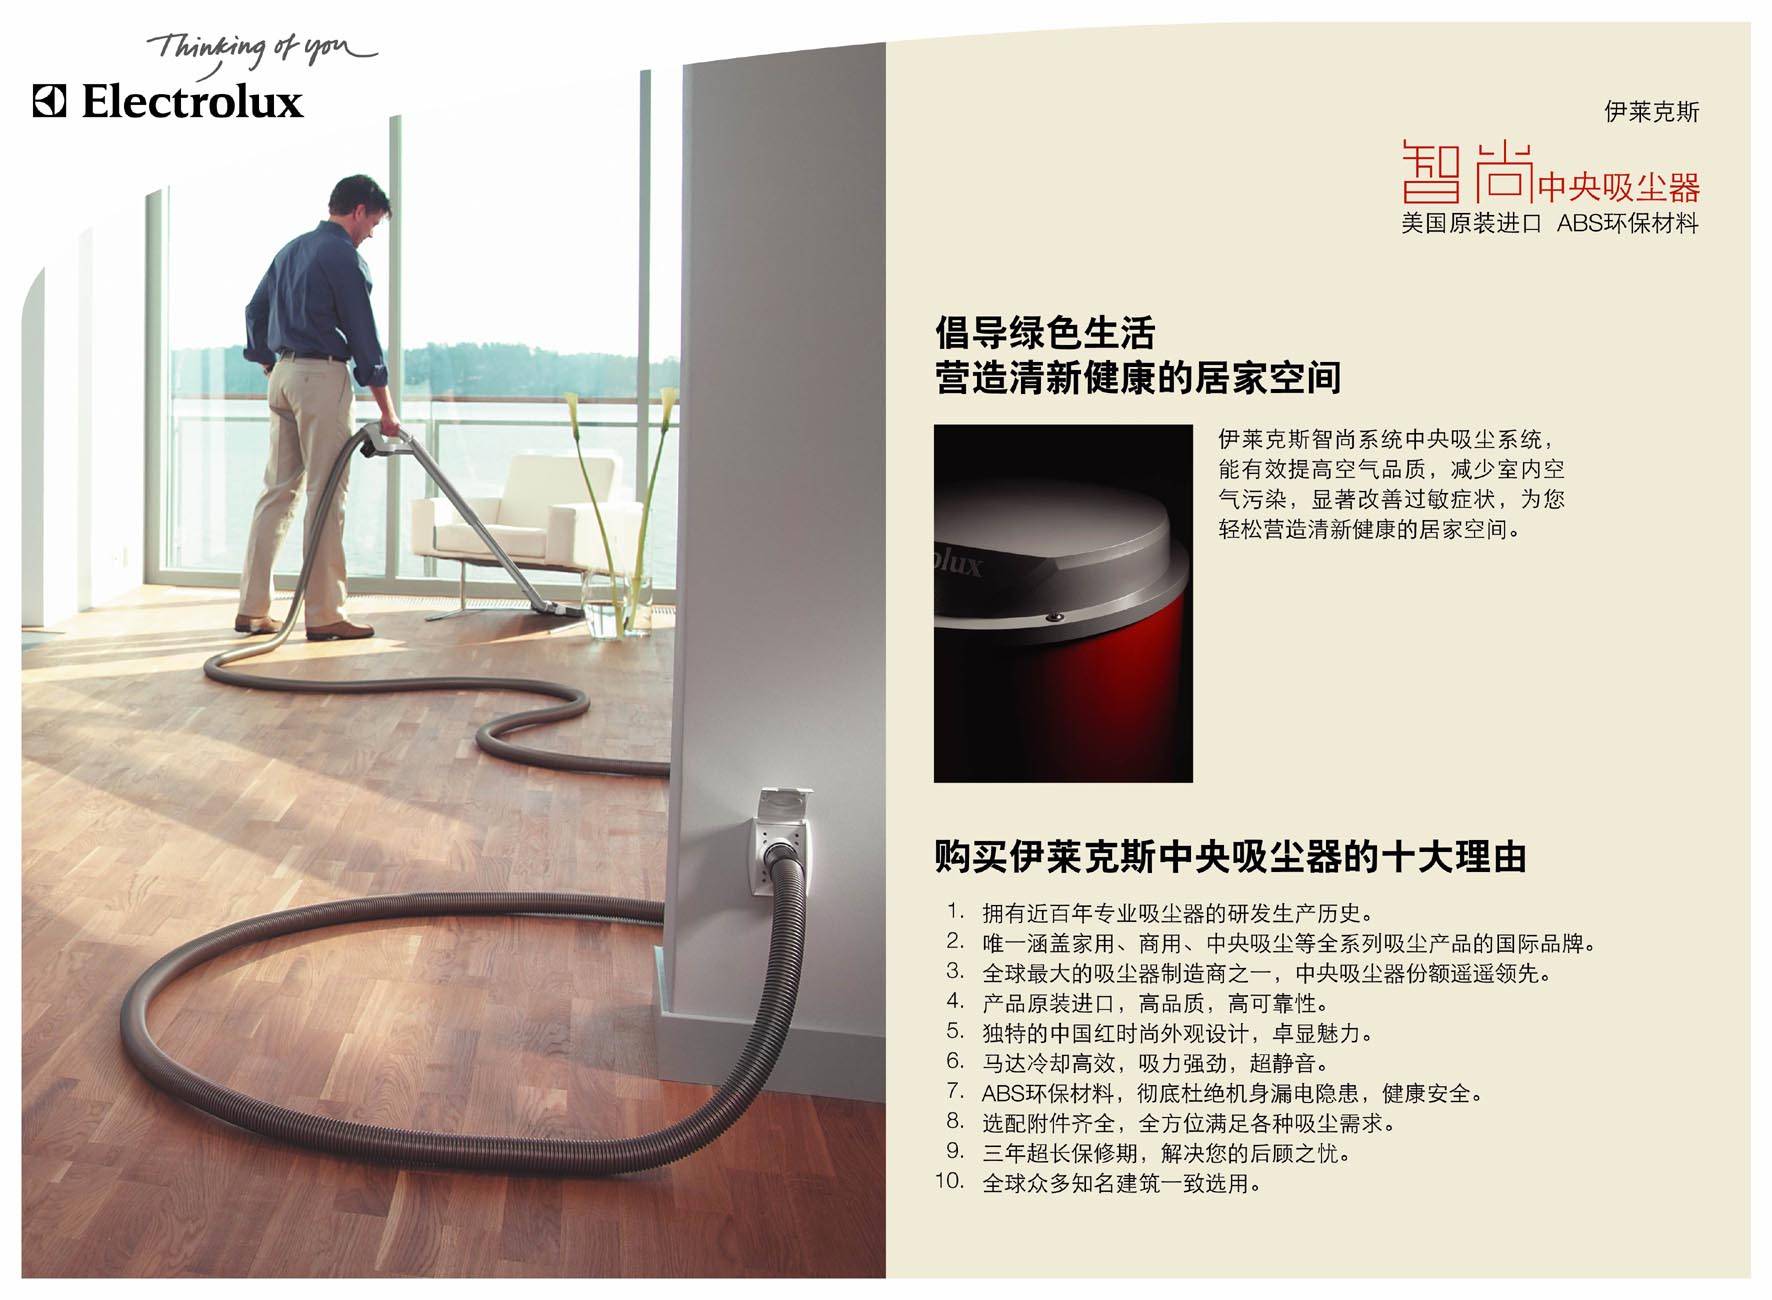 伊莱克斯中央吸尘系统最新款产品现向中国地区诚招经销商